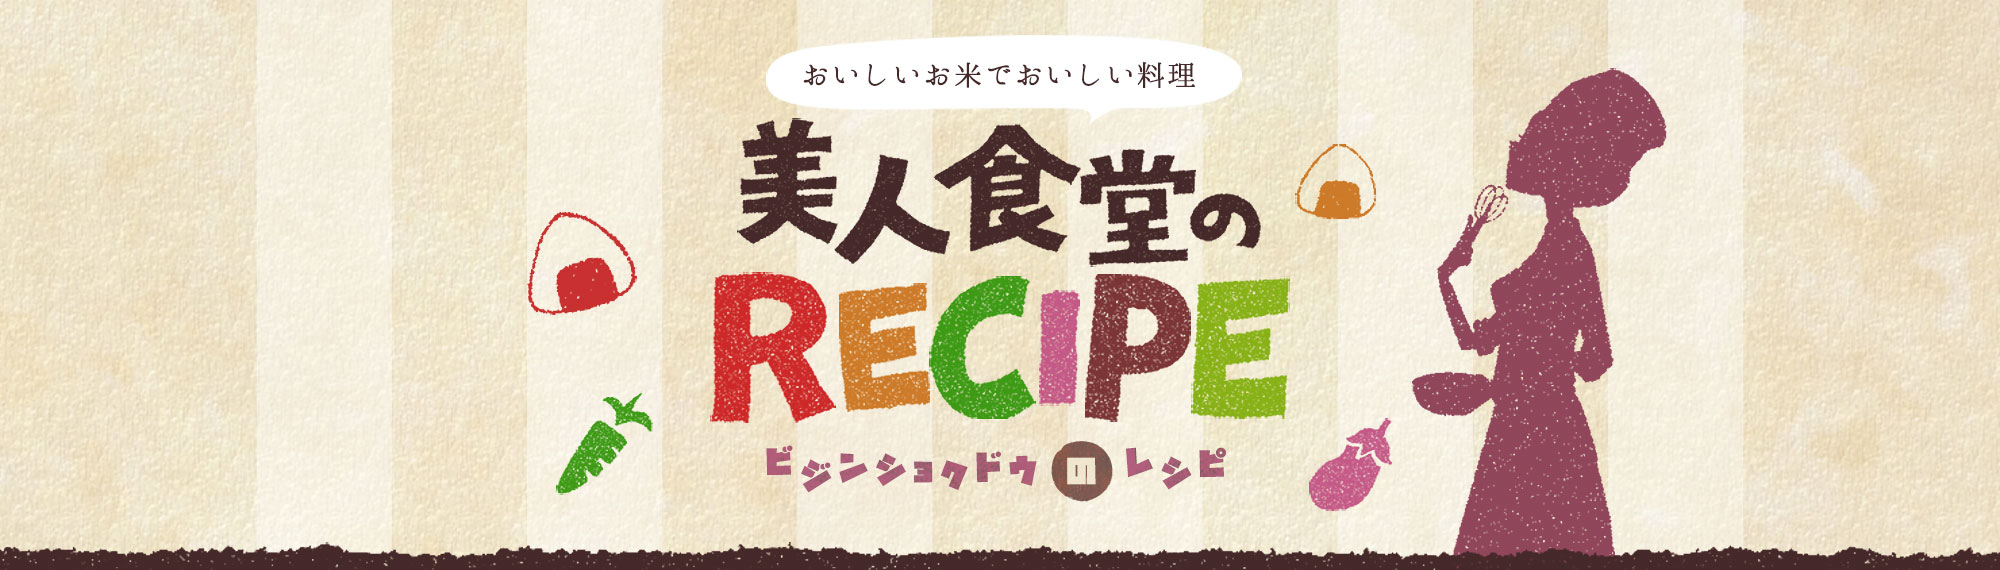 おいしいお米でおいしい料理 美人食堂のRECIPE(ビジンショクドウのレシピ)